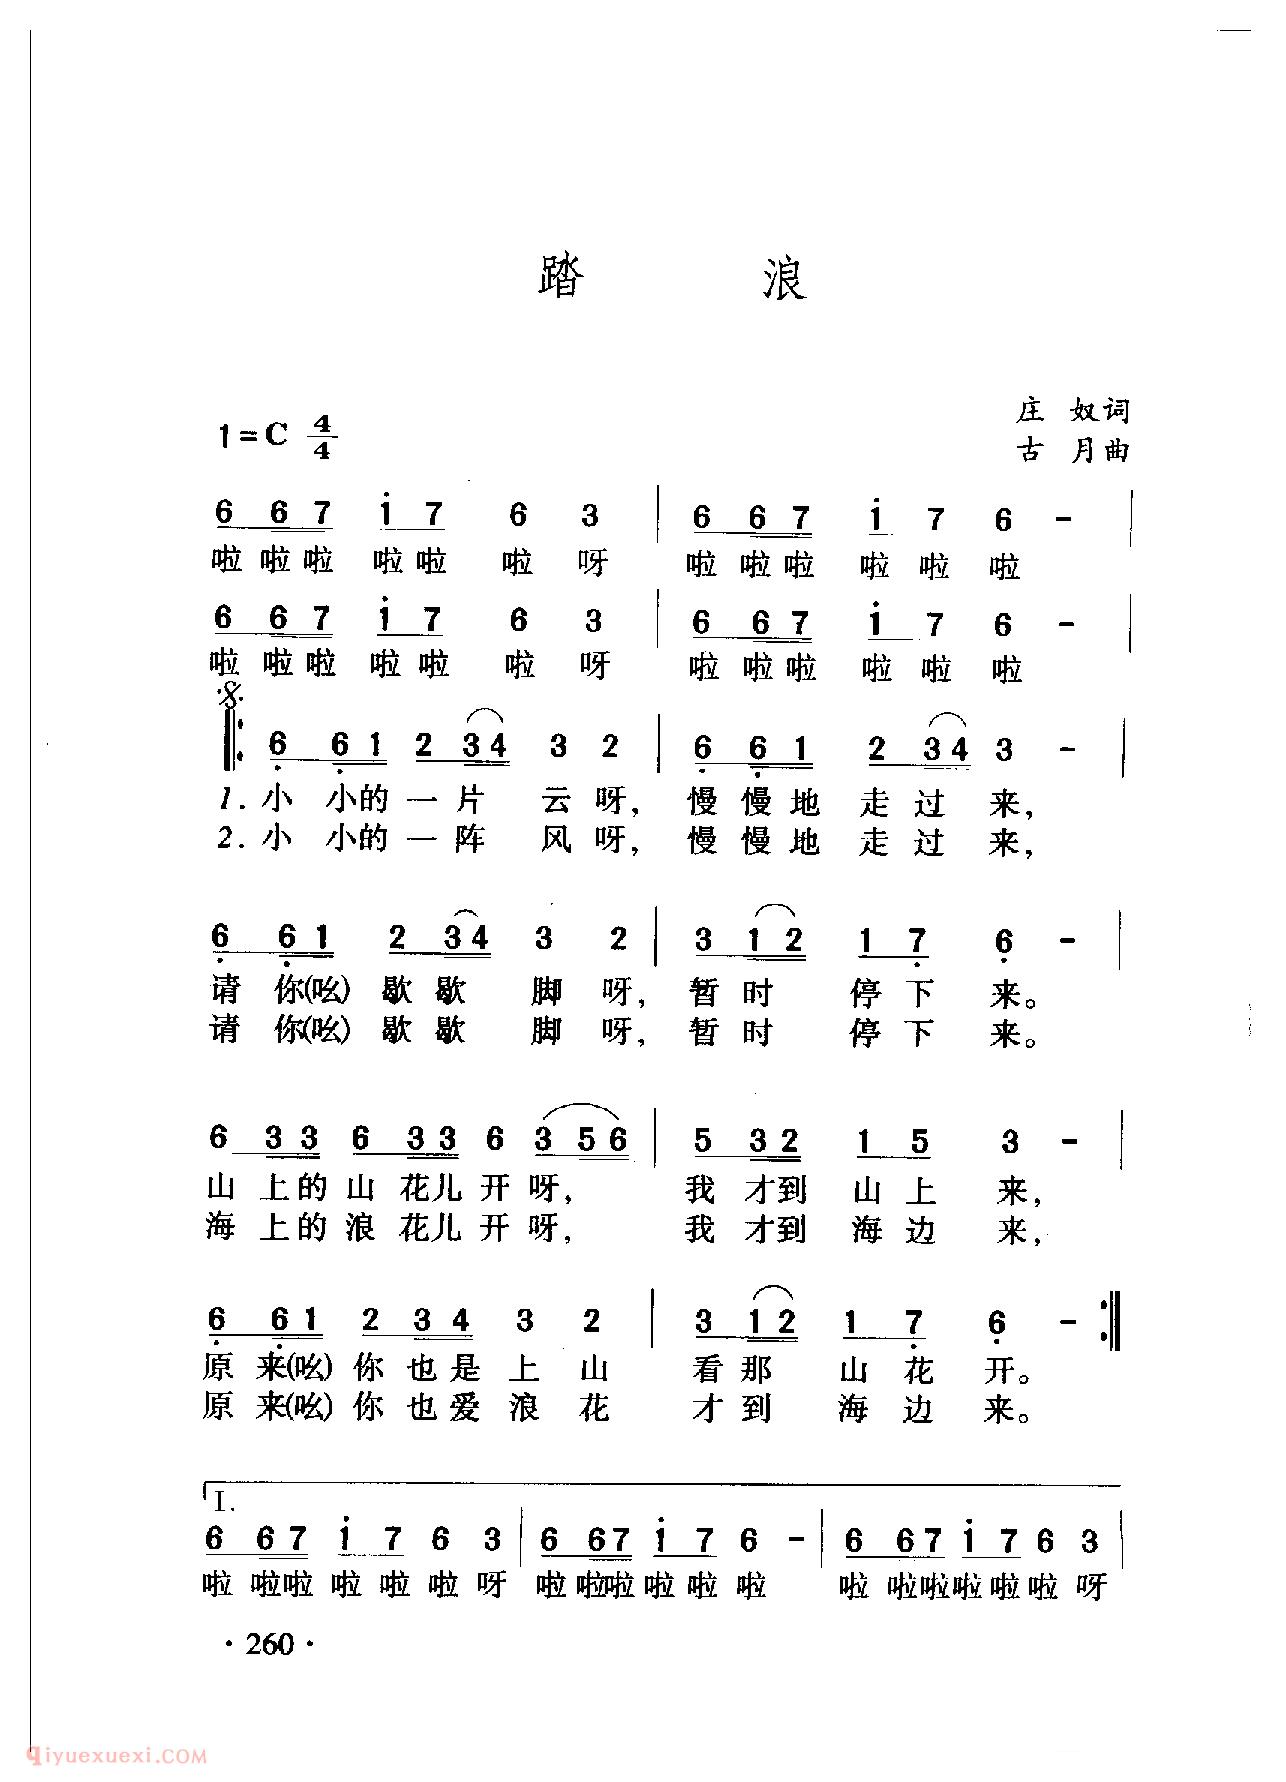 中国名歌[踏浪]乐谱